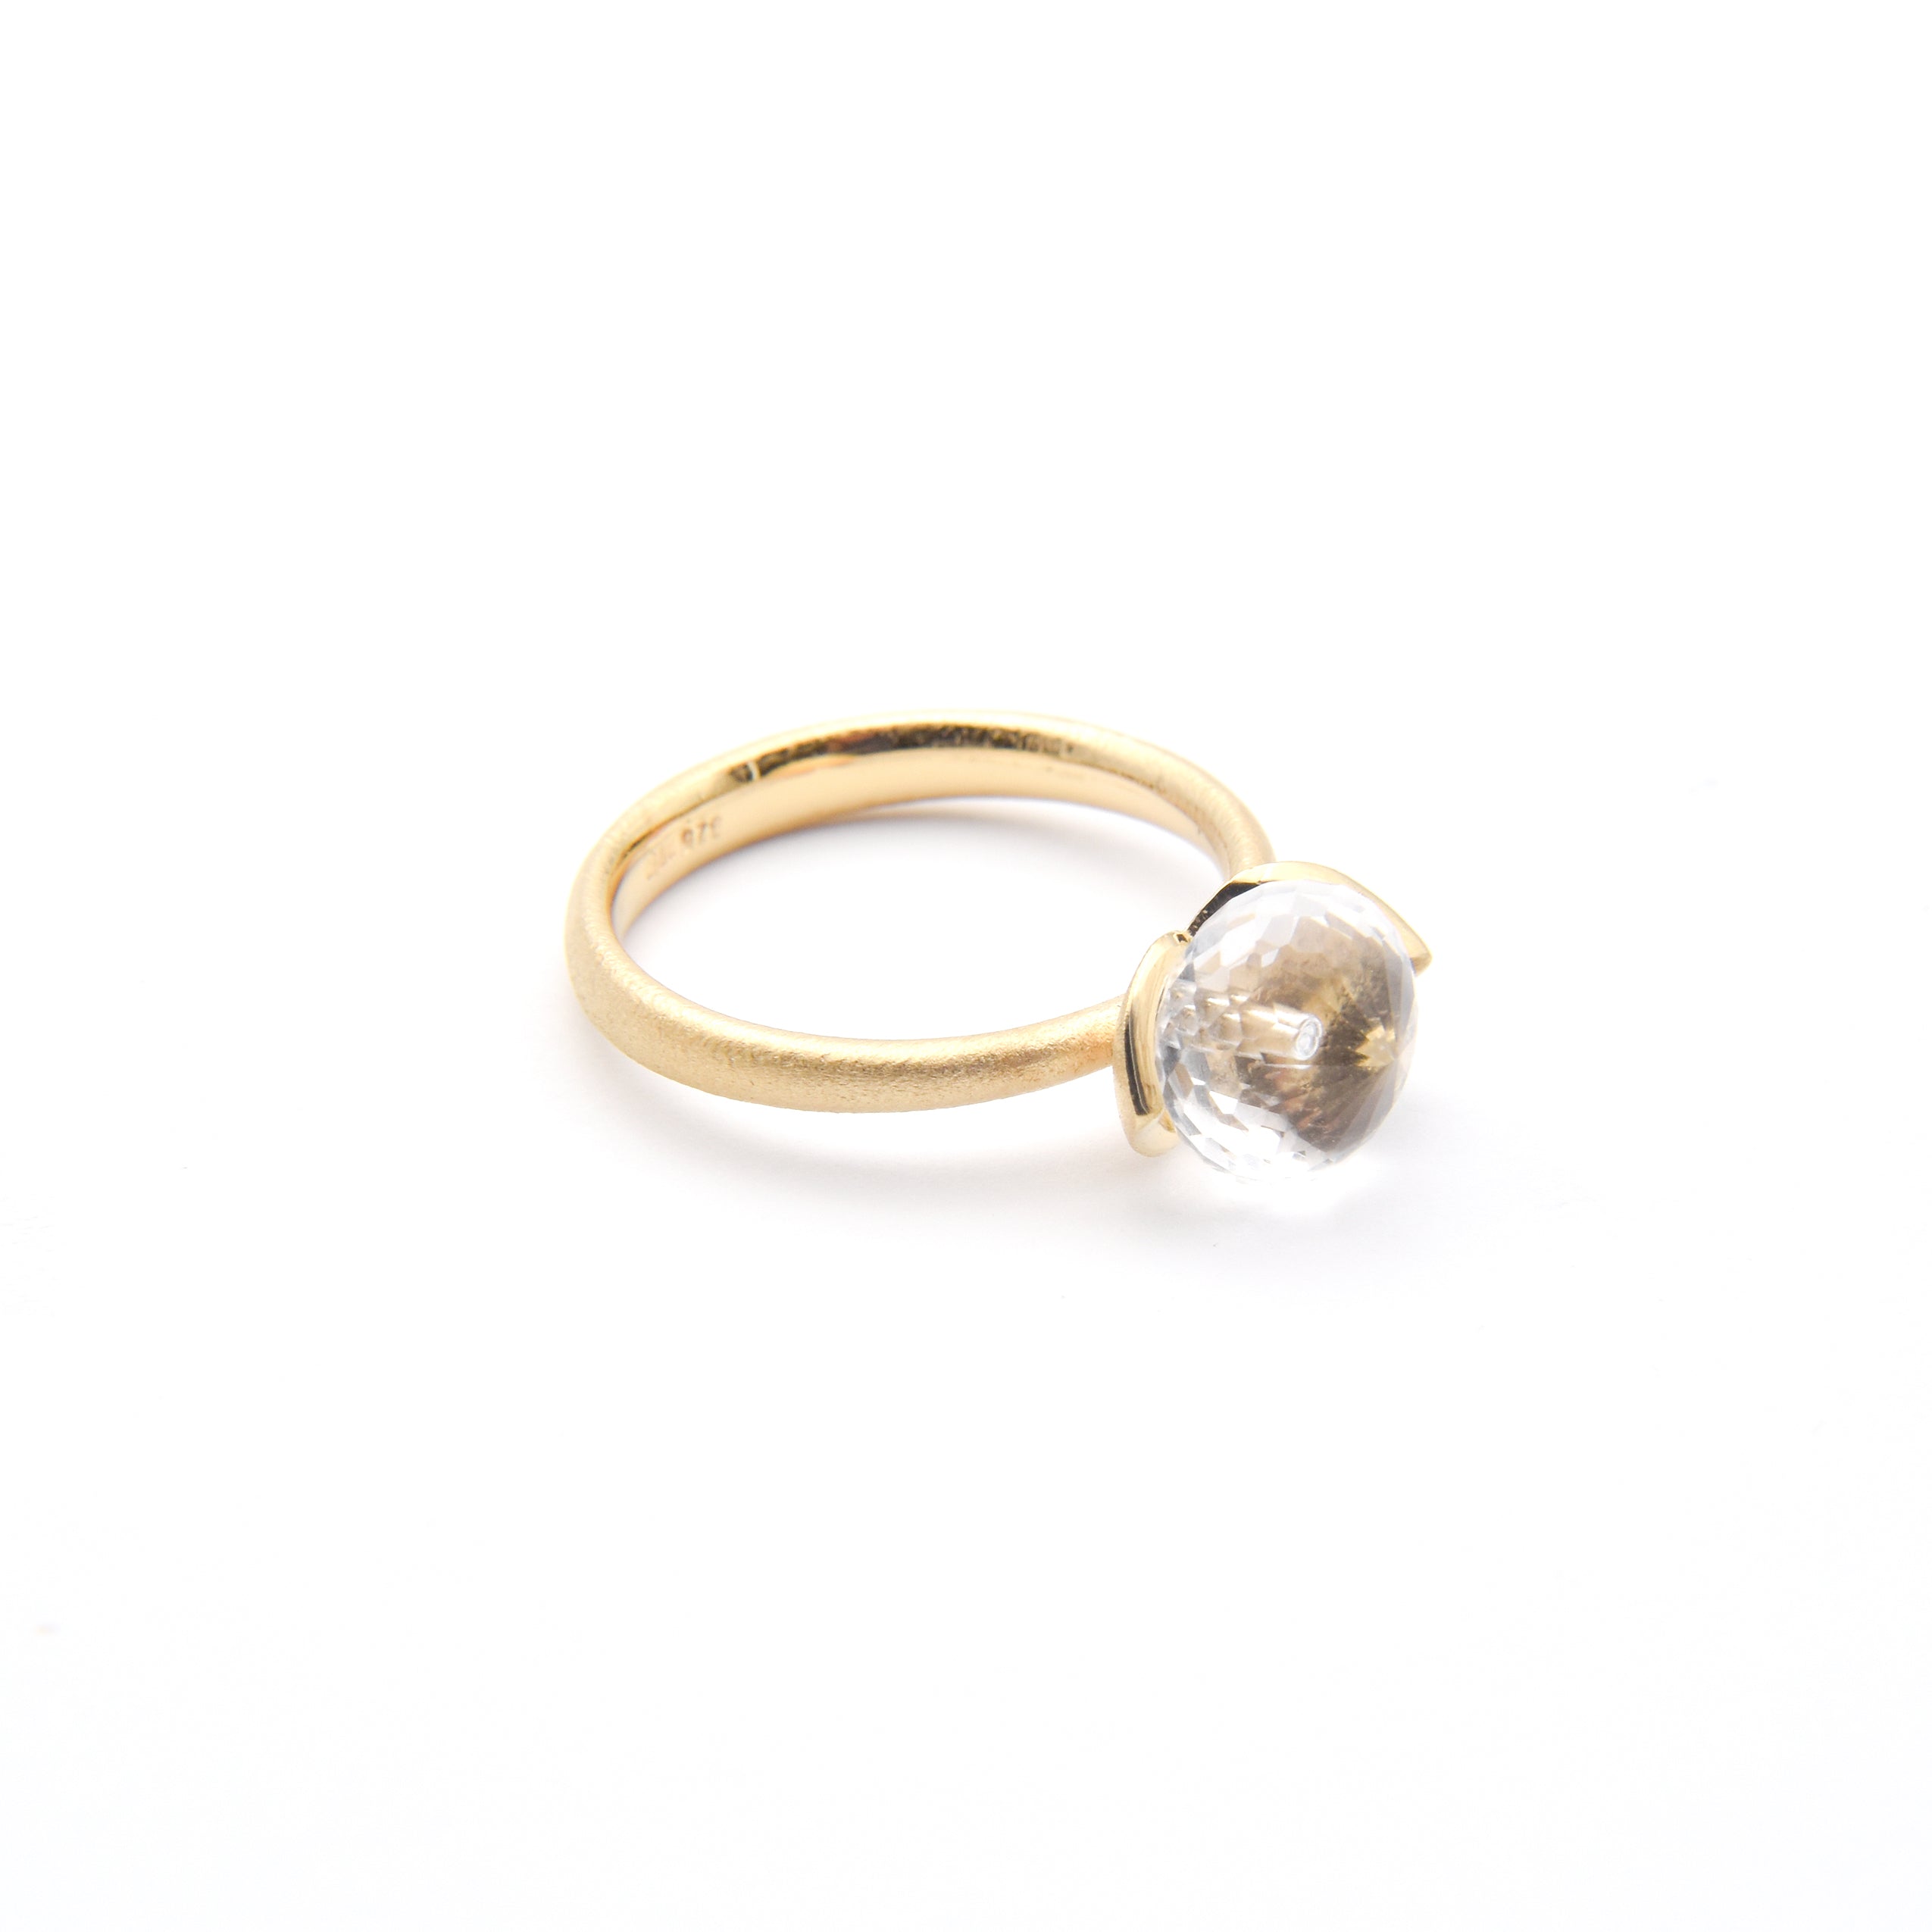 Dolce ring "smal" met bergkristal 925/-